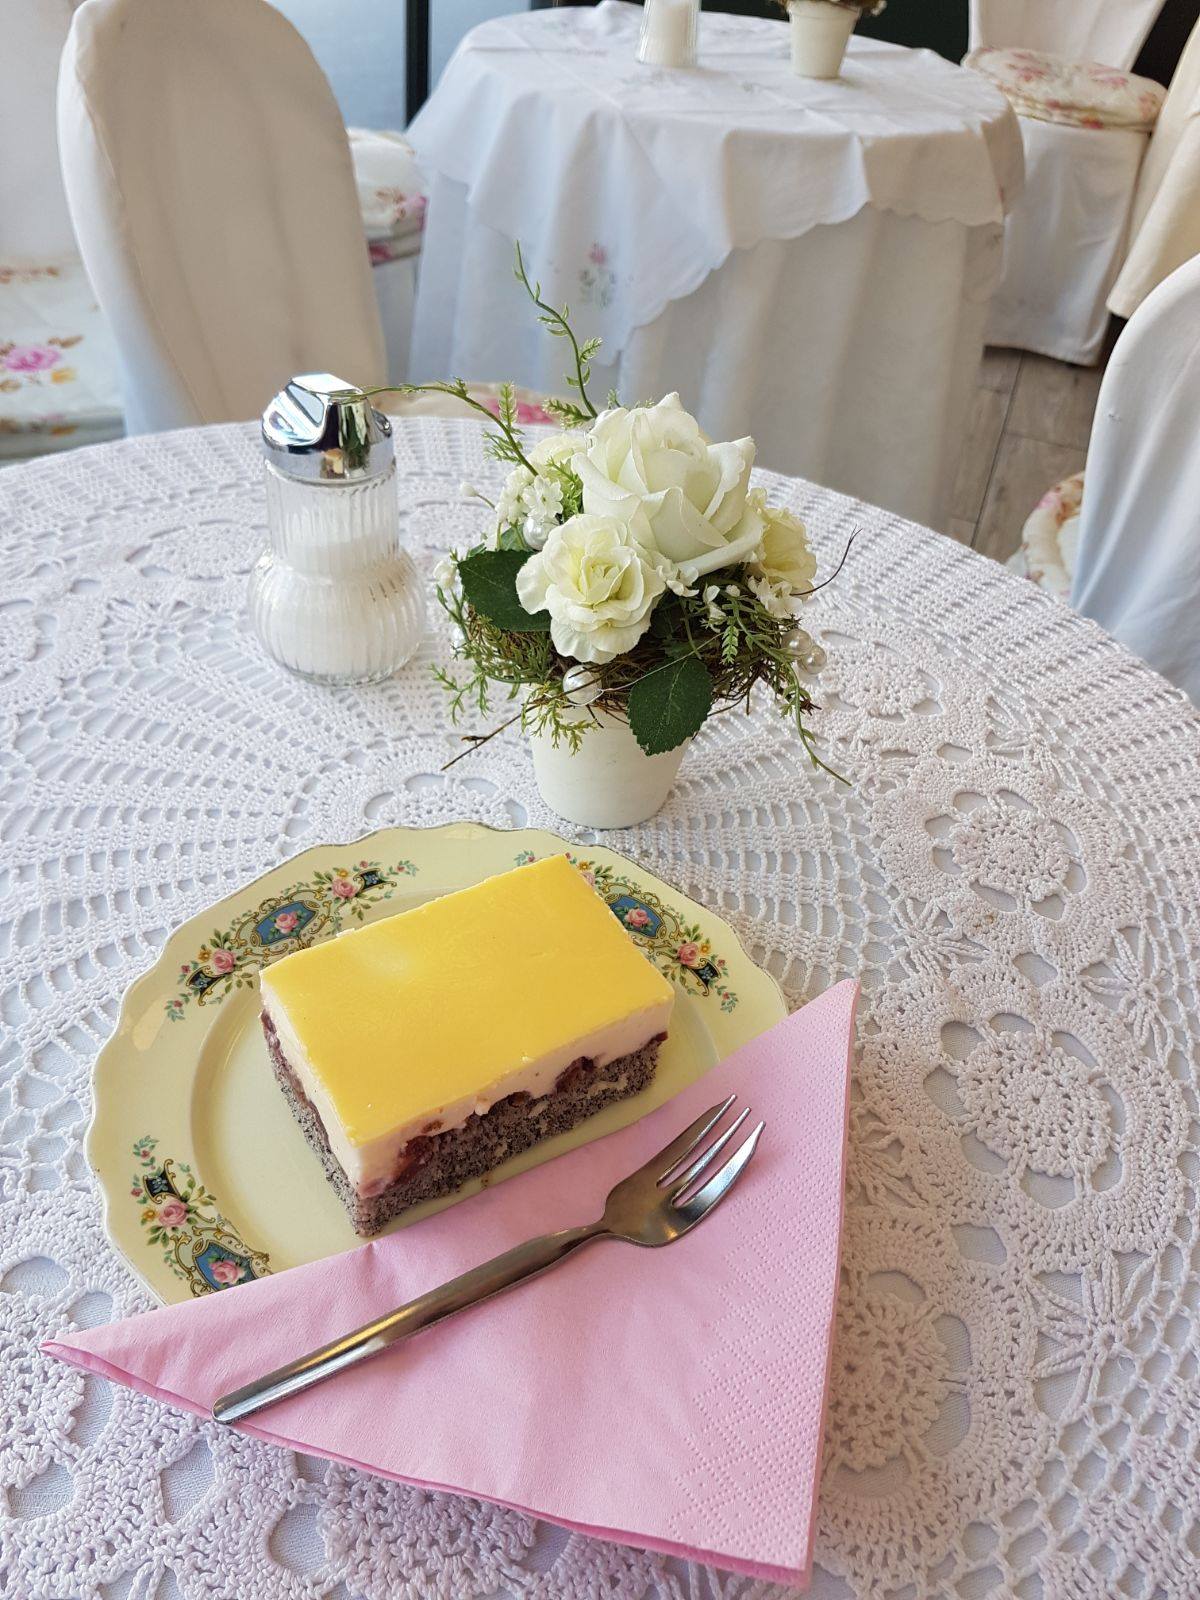 die beliebte und hausgemachte Eierlikörschnitte von Sylvies Kostbarkeiten am Benediktinermarkt in Klagenfurt. Liebevoll angerichtet auf einem verzierten Porzellanteller mit rosa Serviette. Der Tisch ist mit einem Häkeldeckchen und einen kleinen Topf mit einer weißen Rose geschmückt